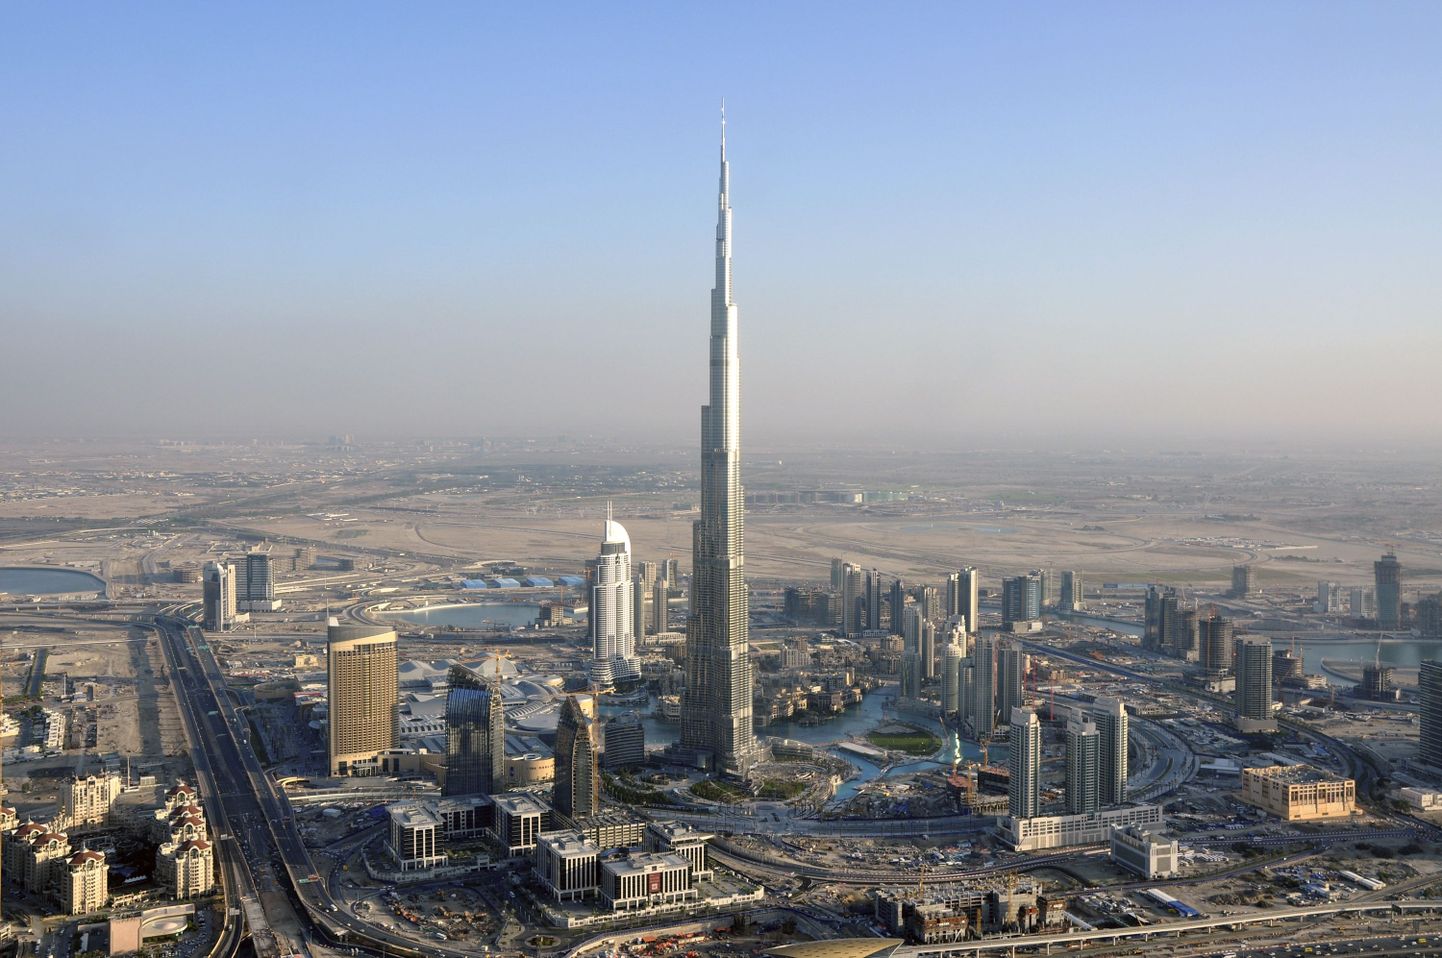 Vaade täna uksed avavale Burj Dubai pilvelõhkujale, mida mõned nimetavad ka liialduste ajastu sümboliks.